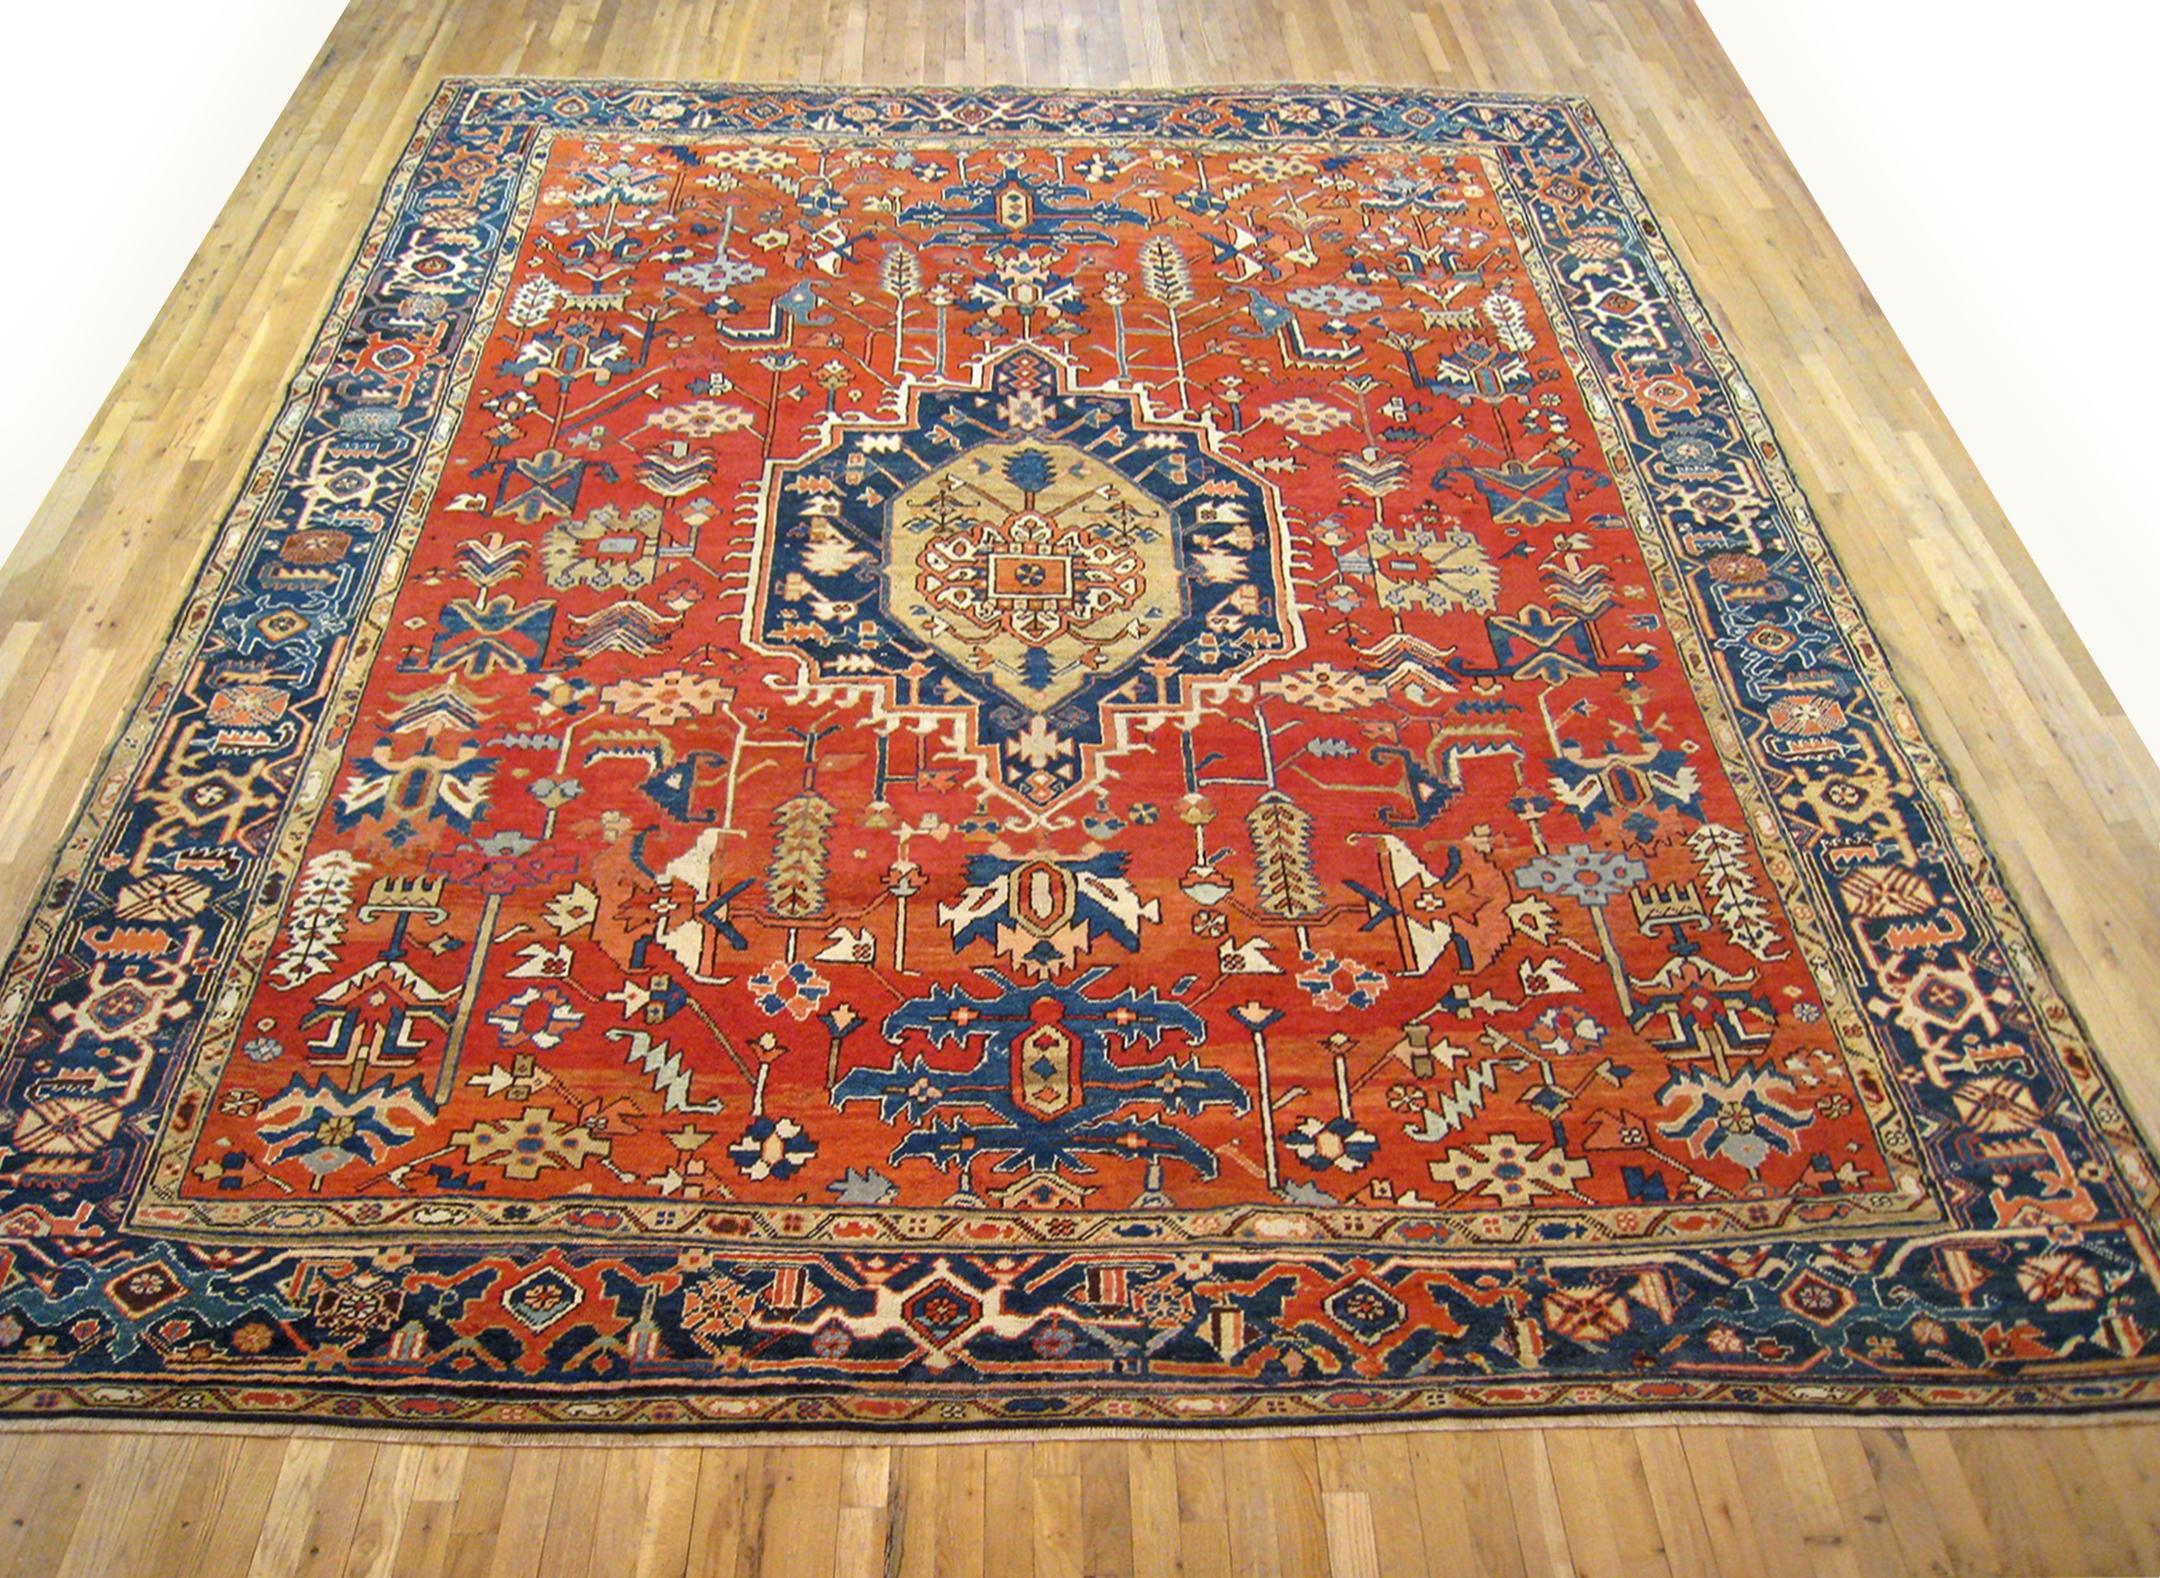 Antique Persian Heriz Oriental rug, Room size

An antique Persian Heriz oriental rug, size 12'1